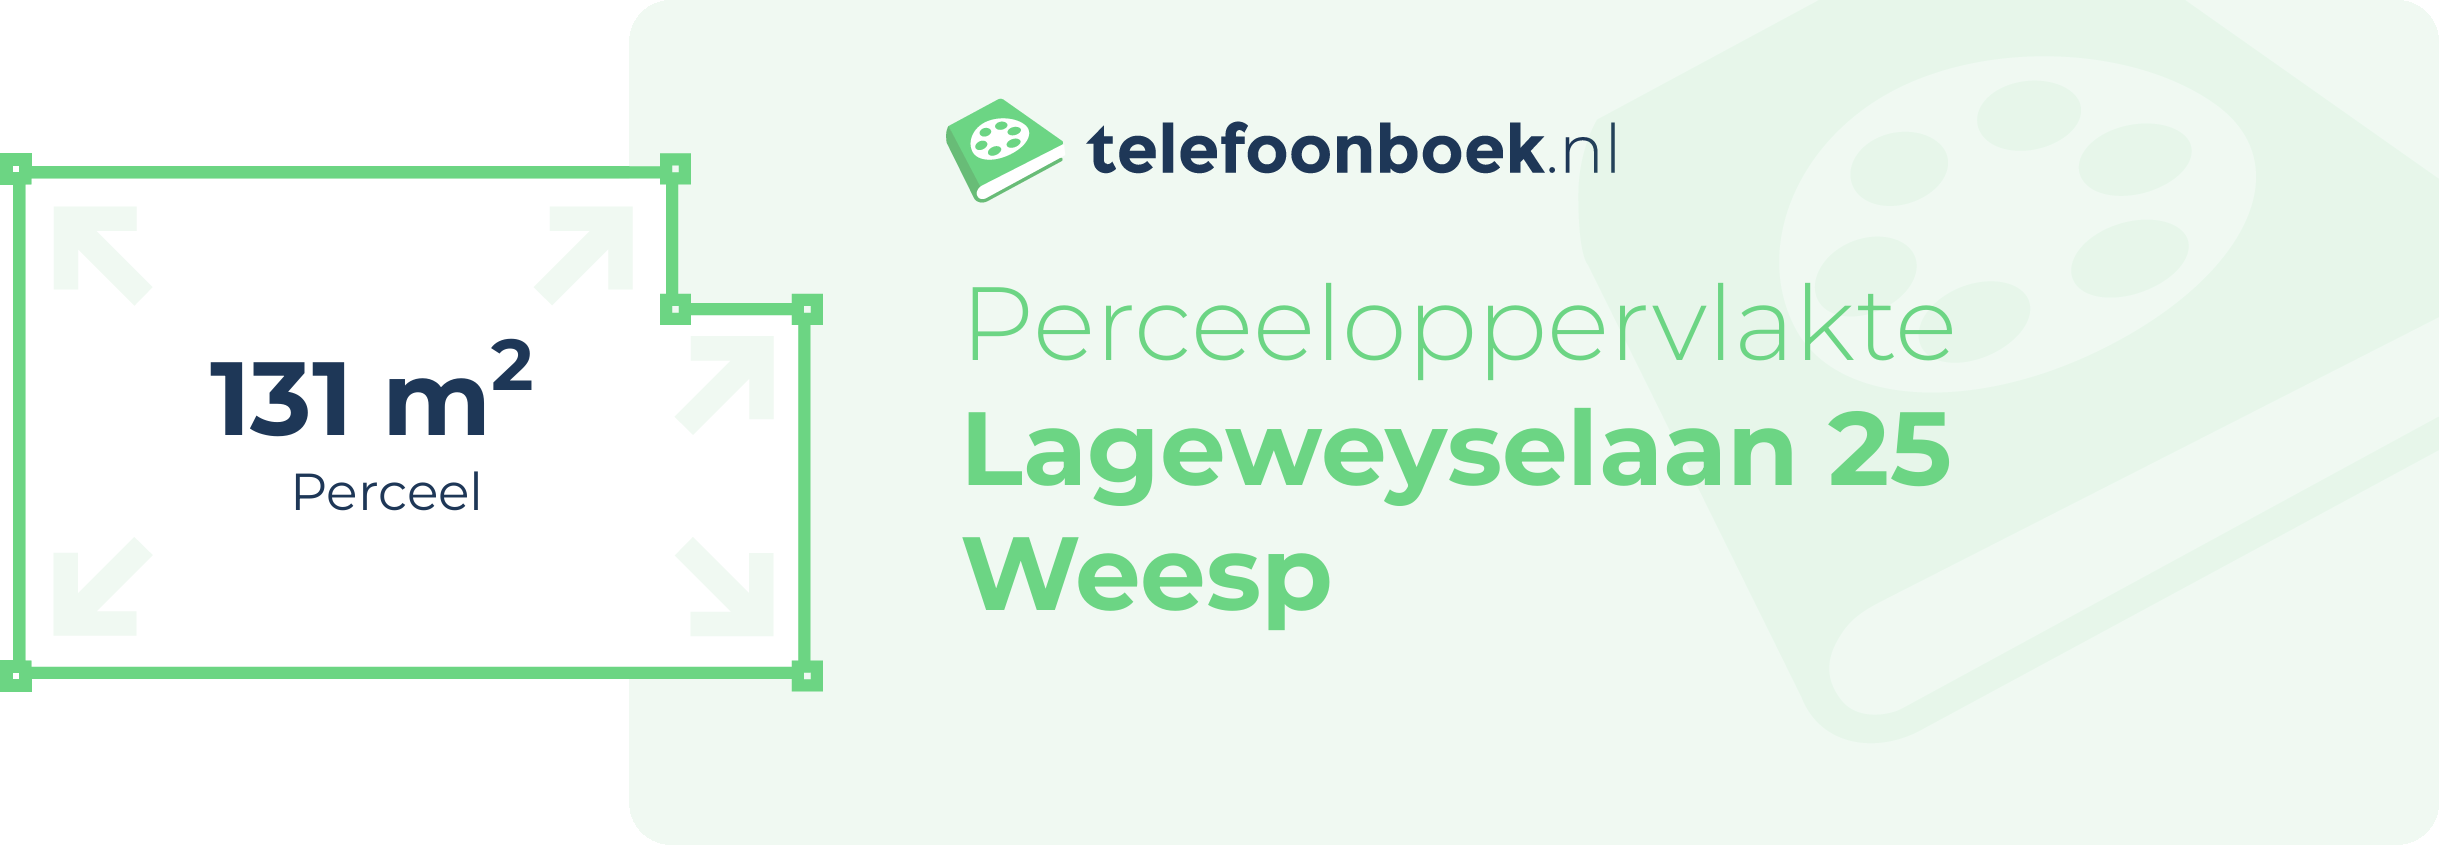 Perceeloppervlakte Lageweyselaan 25 Weesp